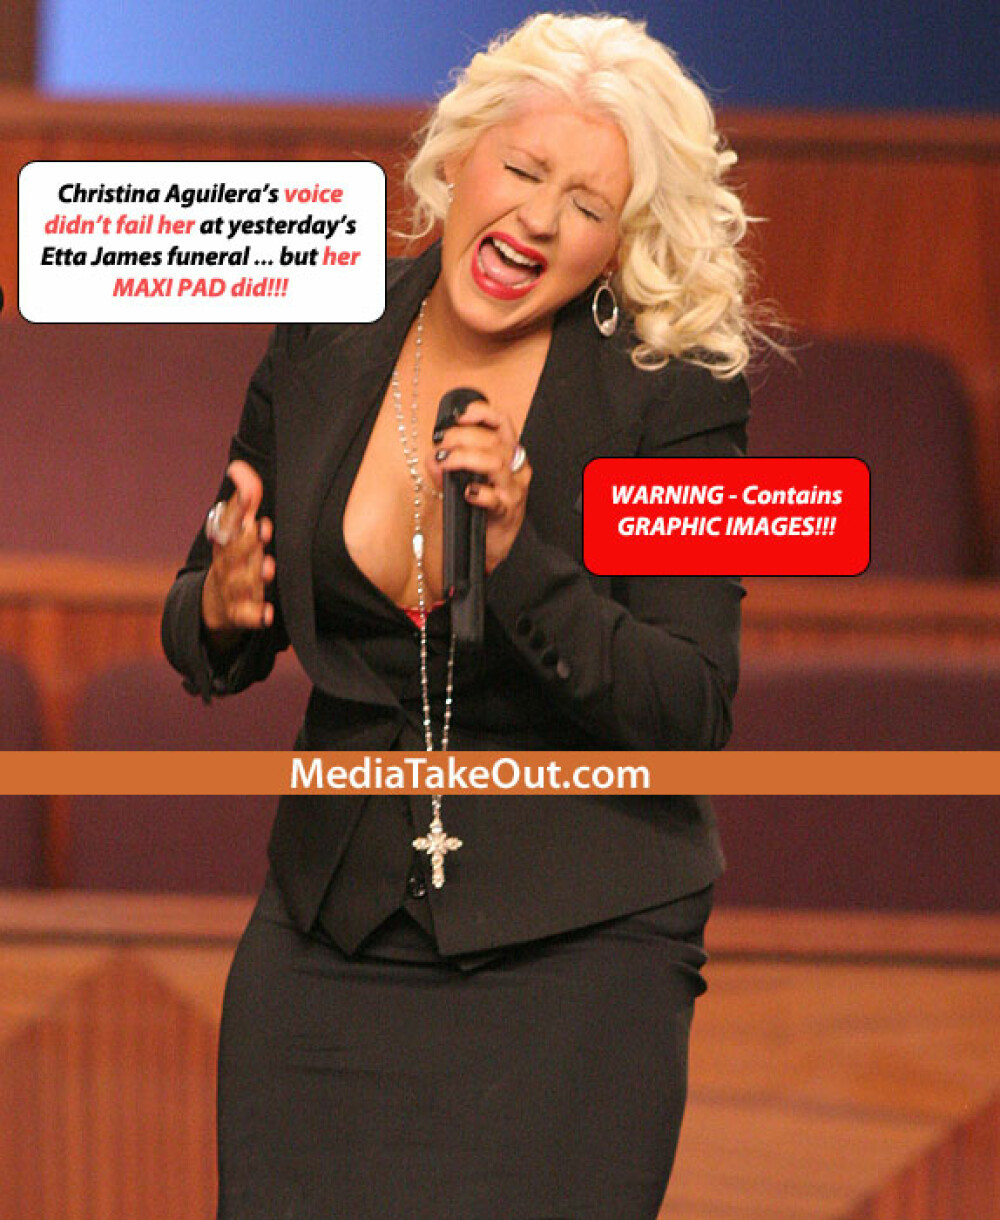 Adevarul despre momentul jenant al Christinei Aguilera. Ce se vedea de fapt pe piciorul artistei - Imaginea 1